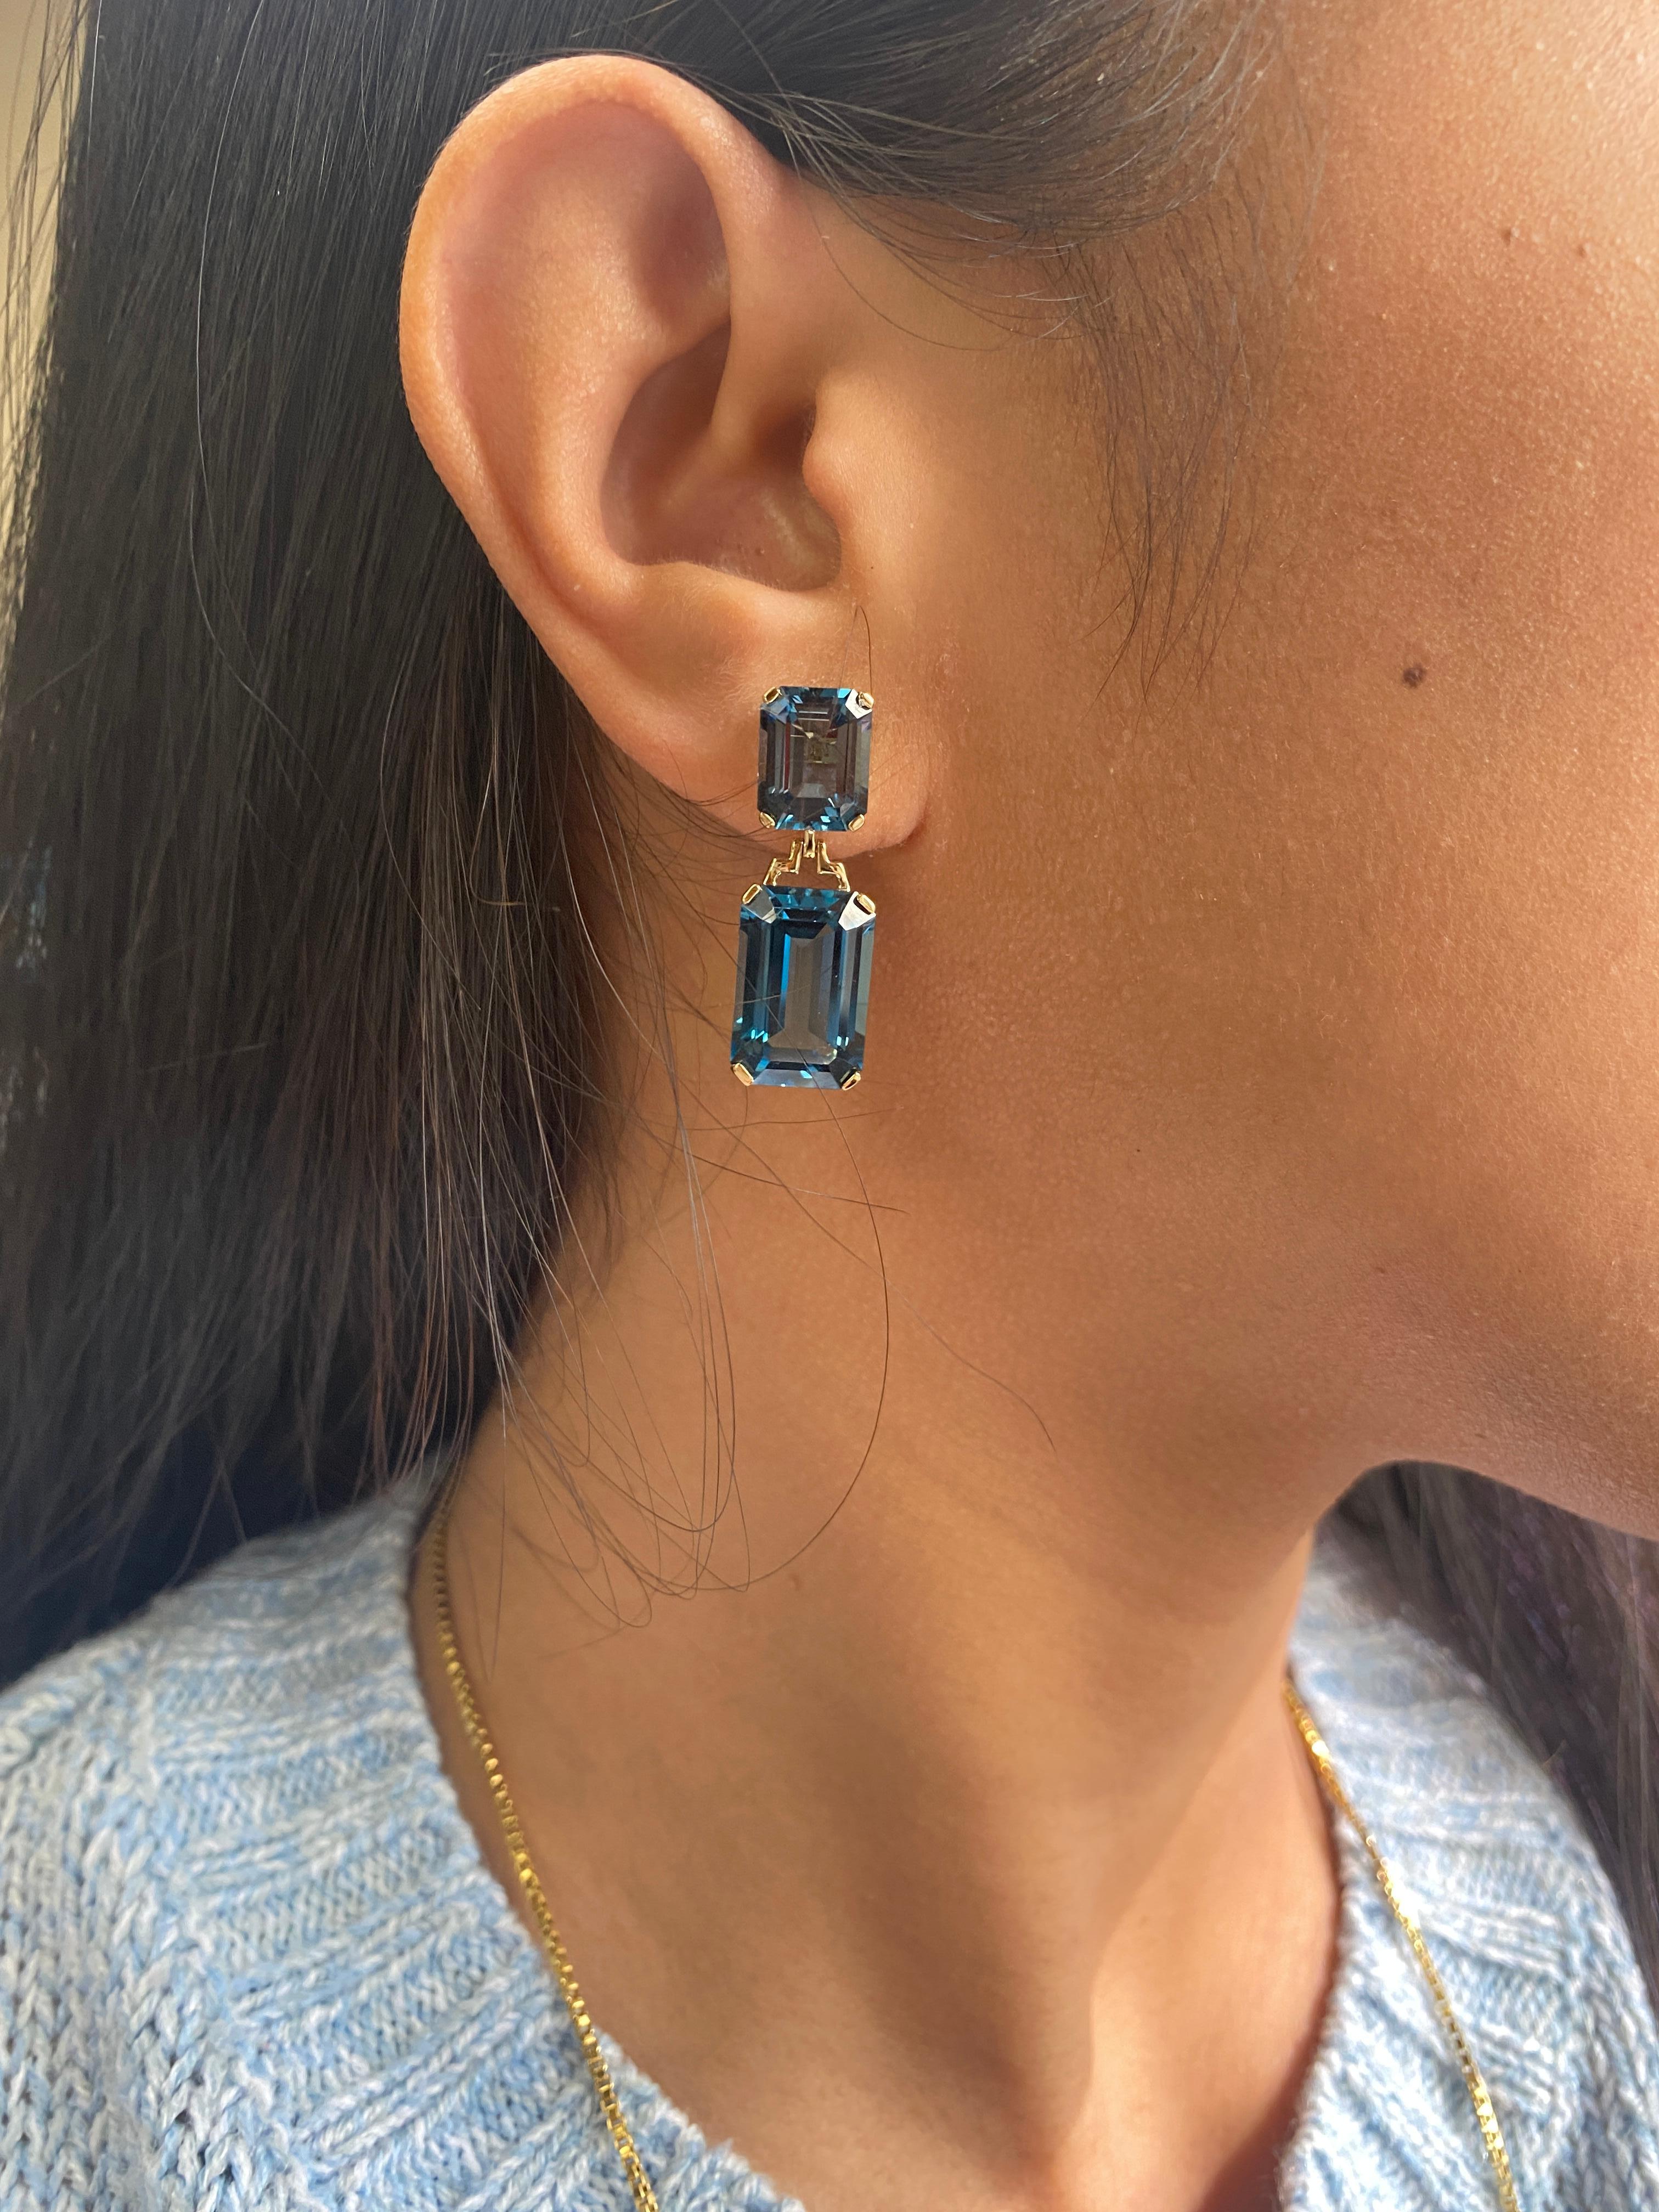 emerald cut london blue topaz earrings